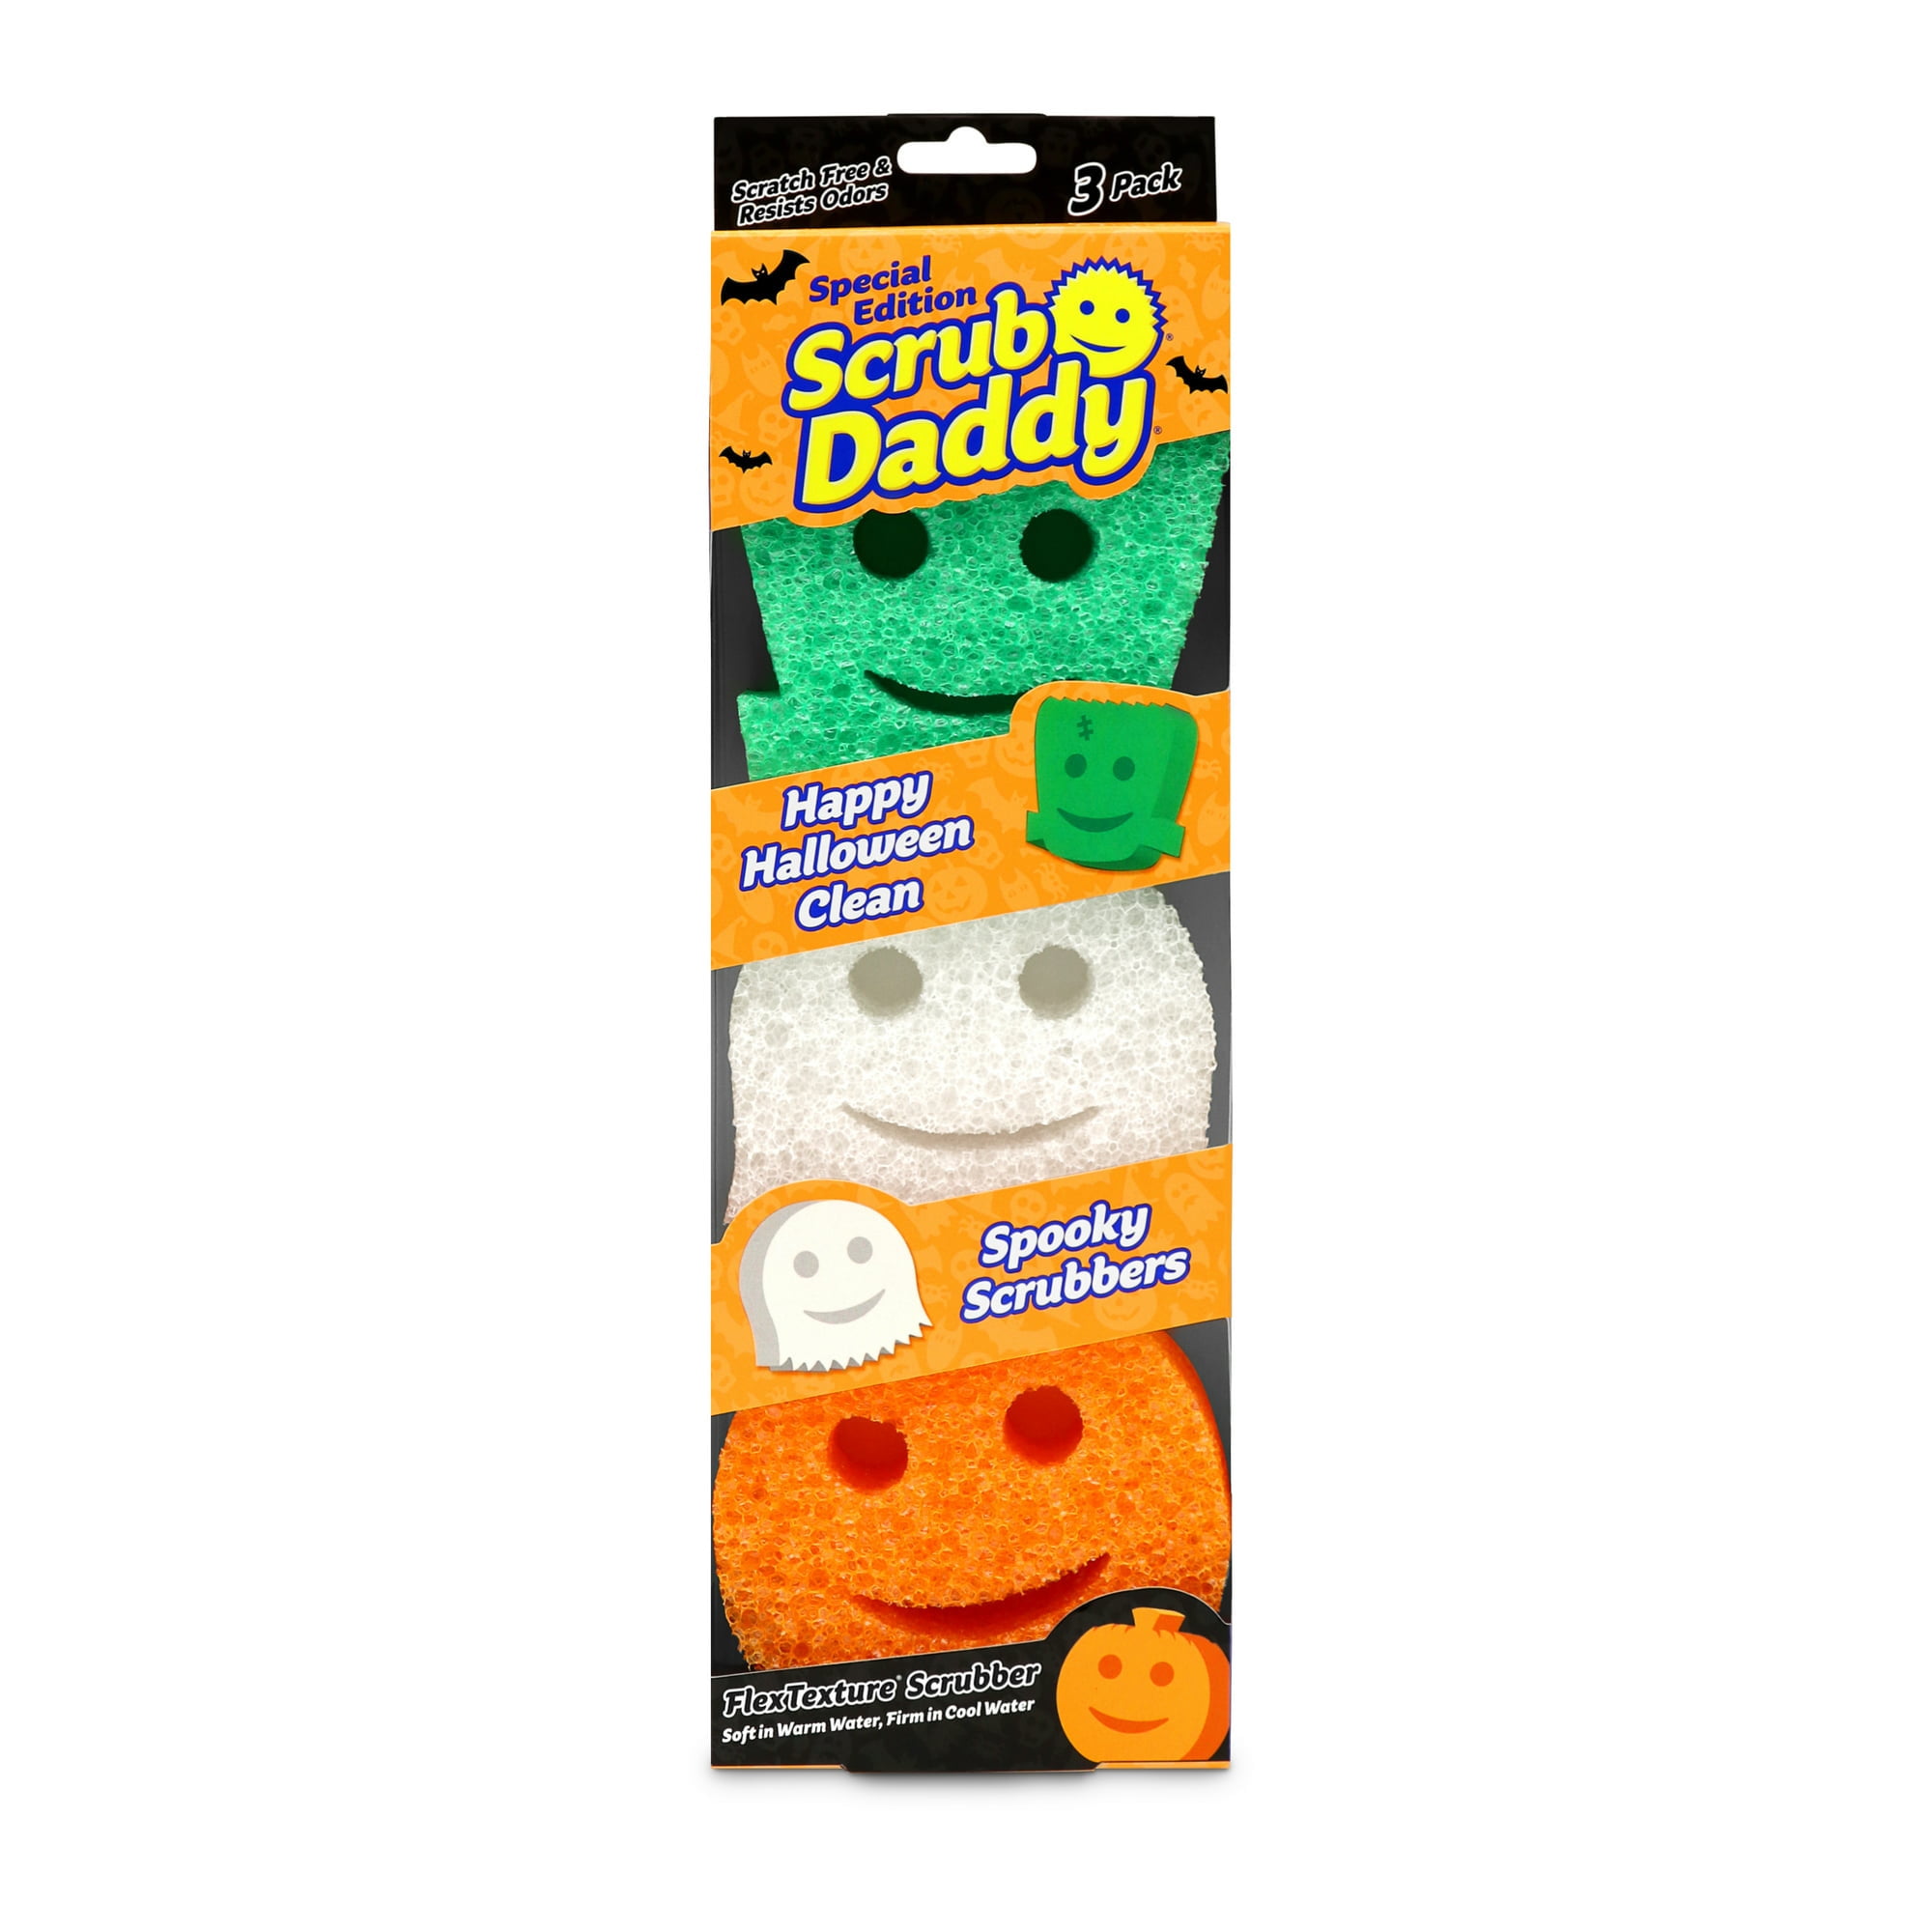 Scrub Daddy Special Edition Halloween Sponges